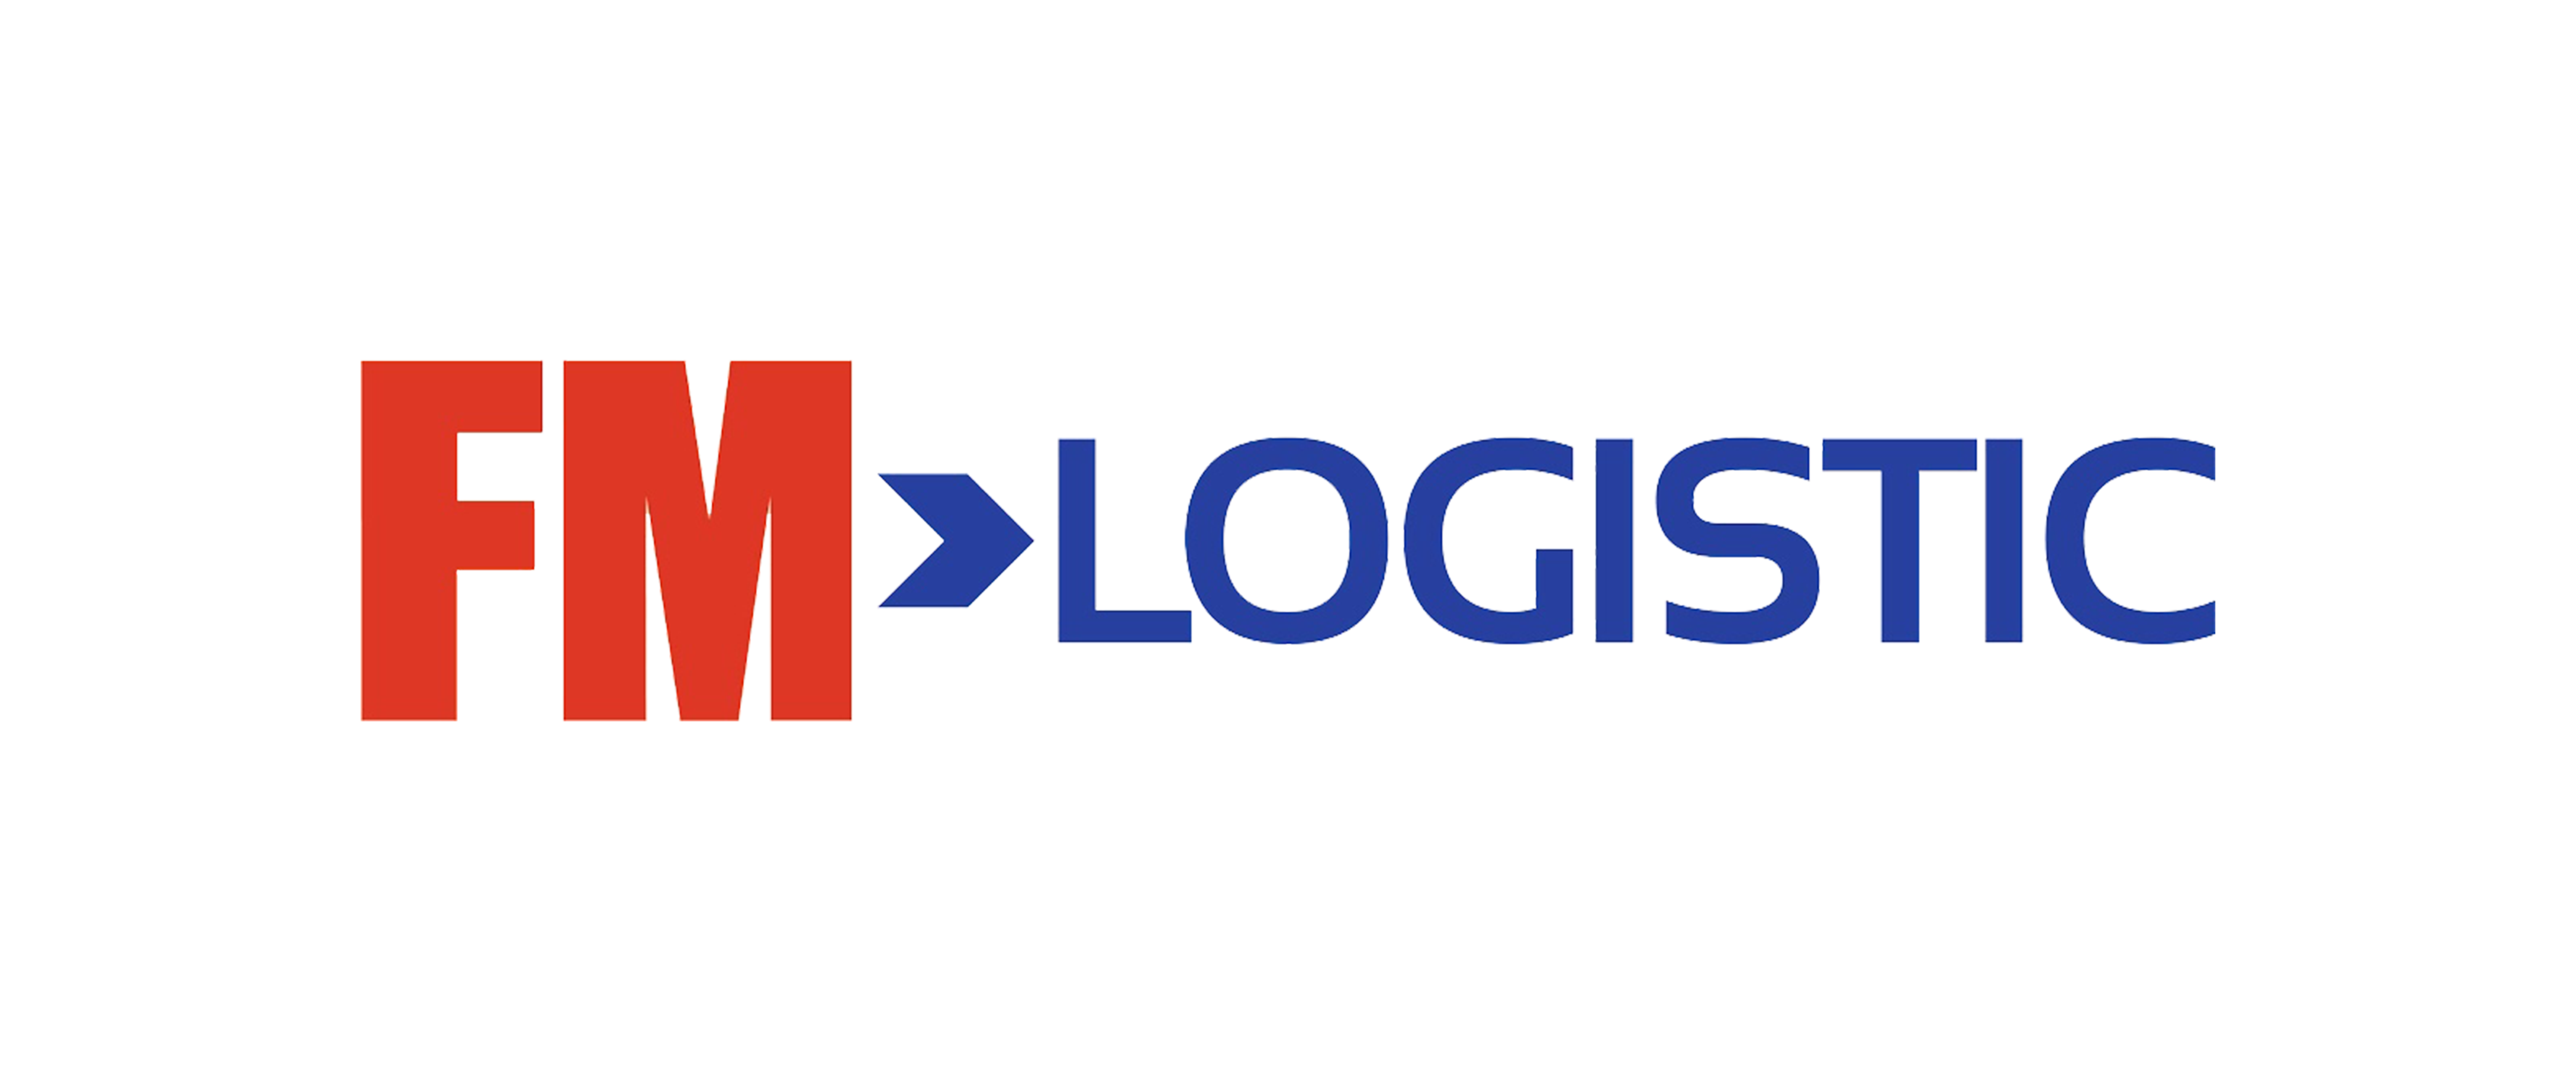 logo-fm-logistic